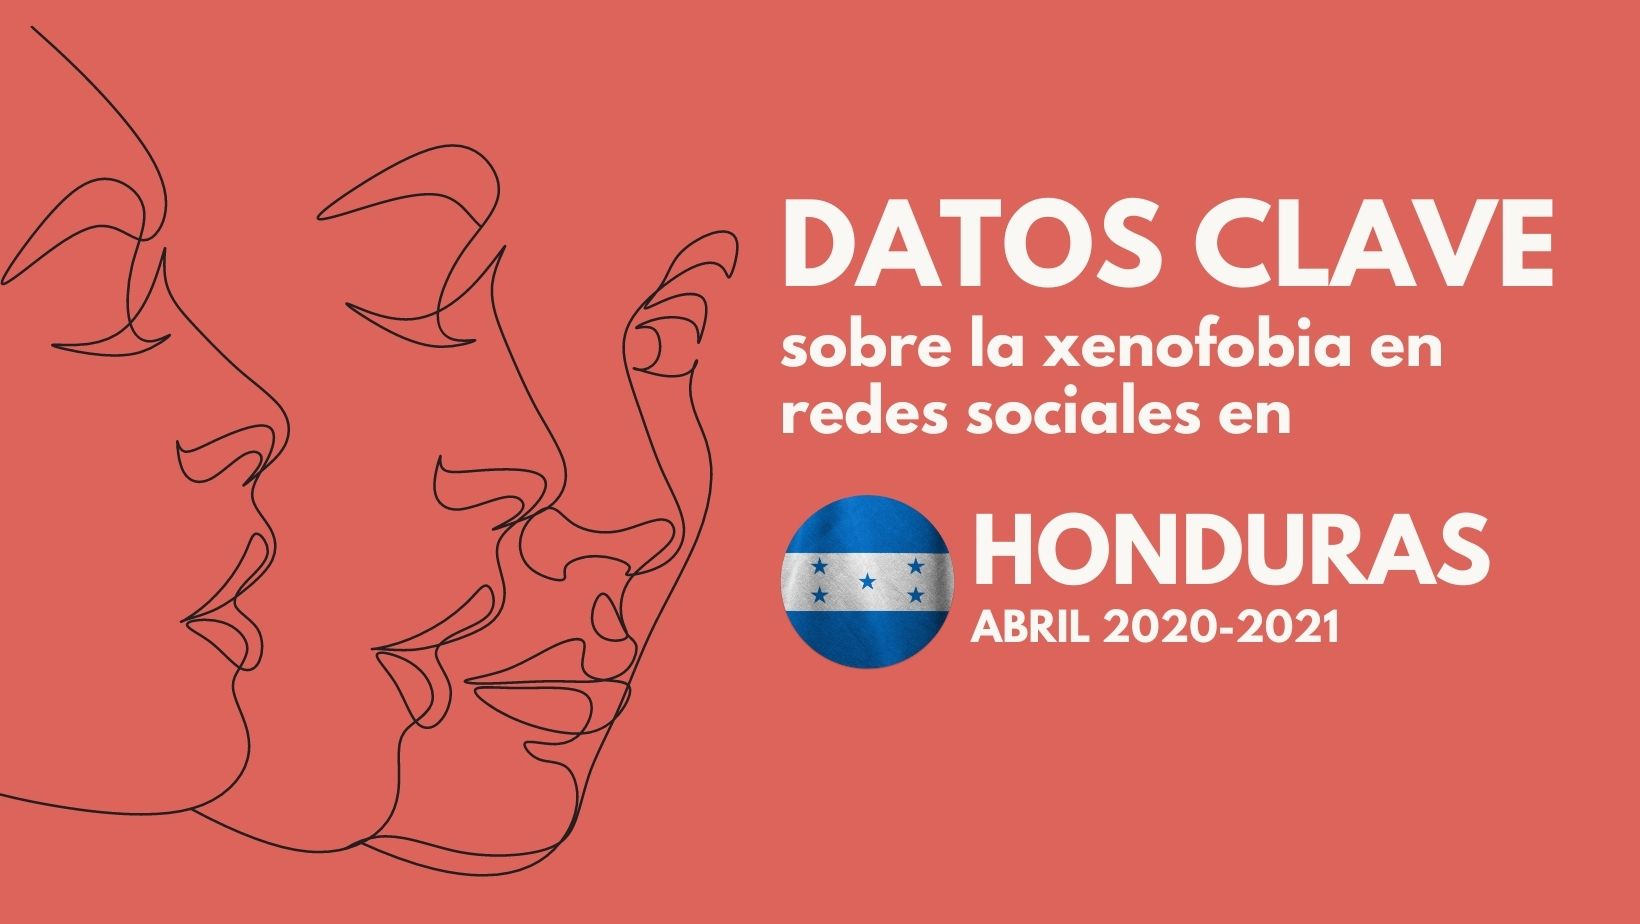 Datos clave la Xenofobia en línea / Honduras